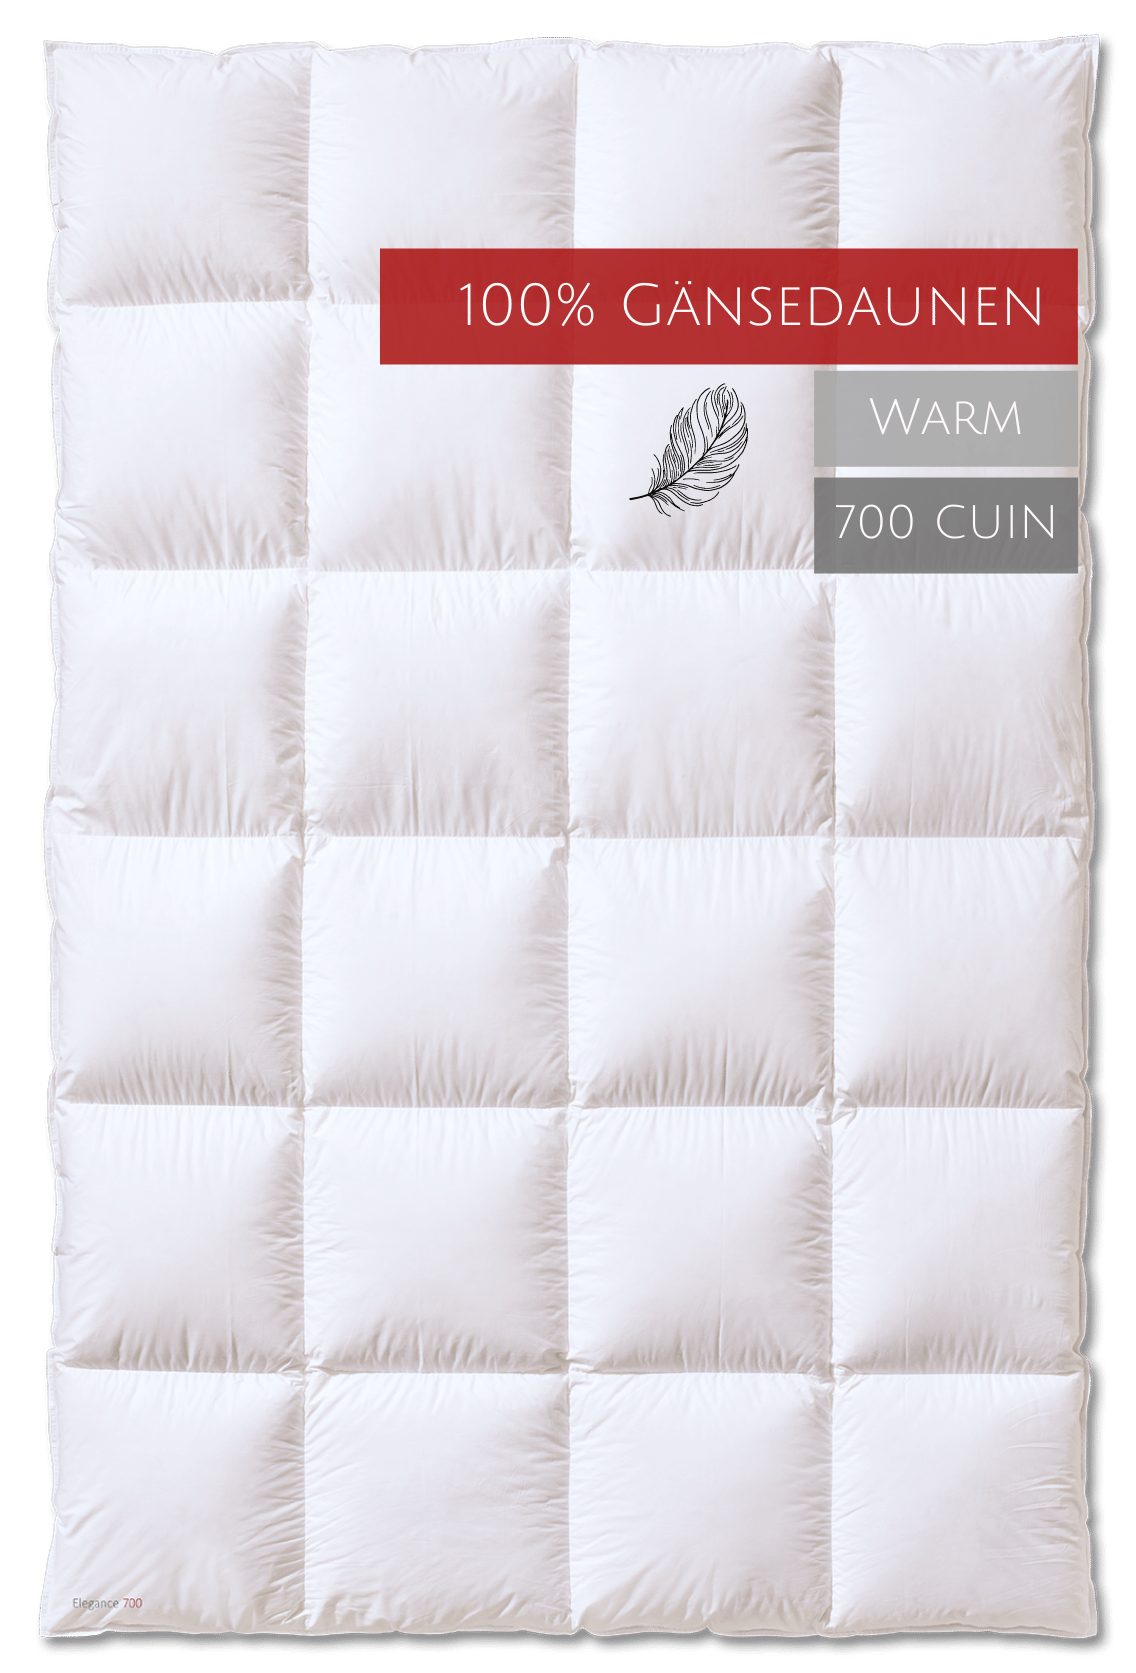 700 "warm", Kauffmann, Füllung: Baumwolle, Elegance Gänsedaunen, Bezug: Wärmestufe Gänsedaunenbettdecke, 100% allergikerfreundlich